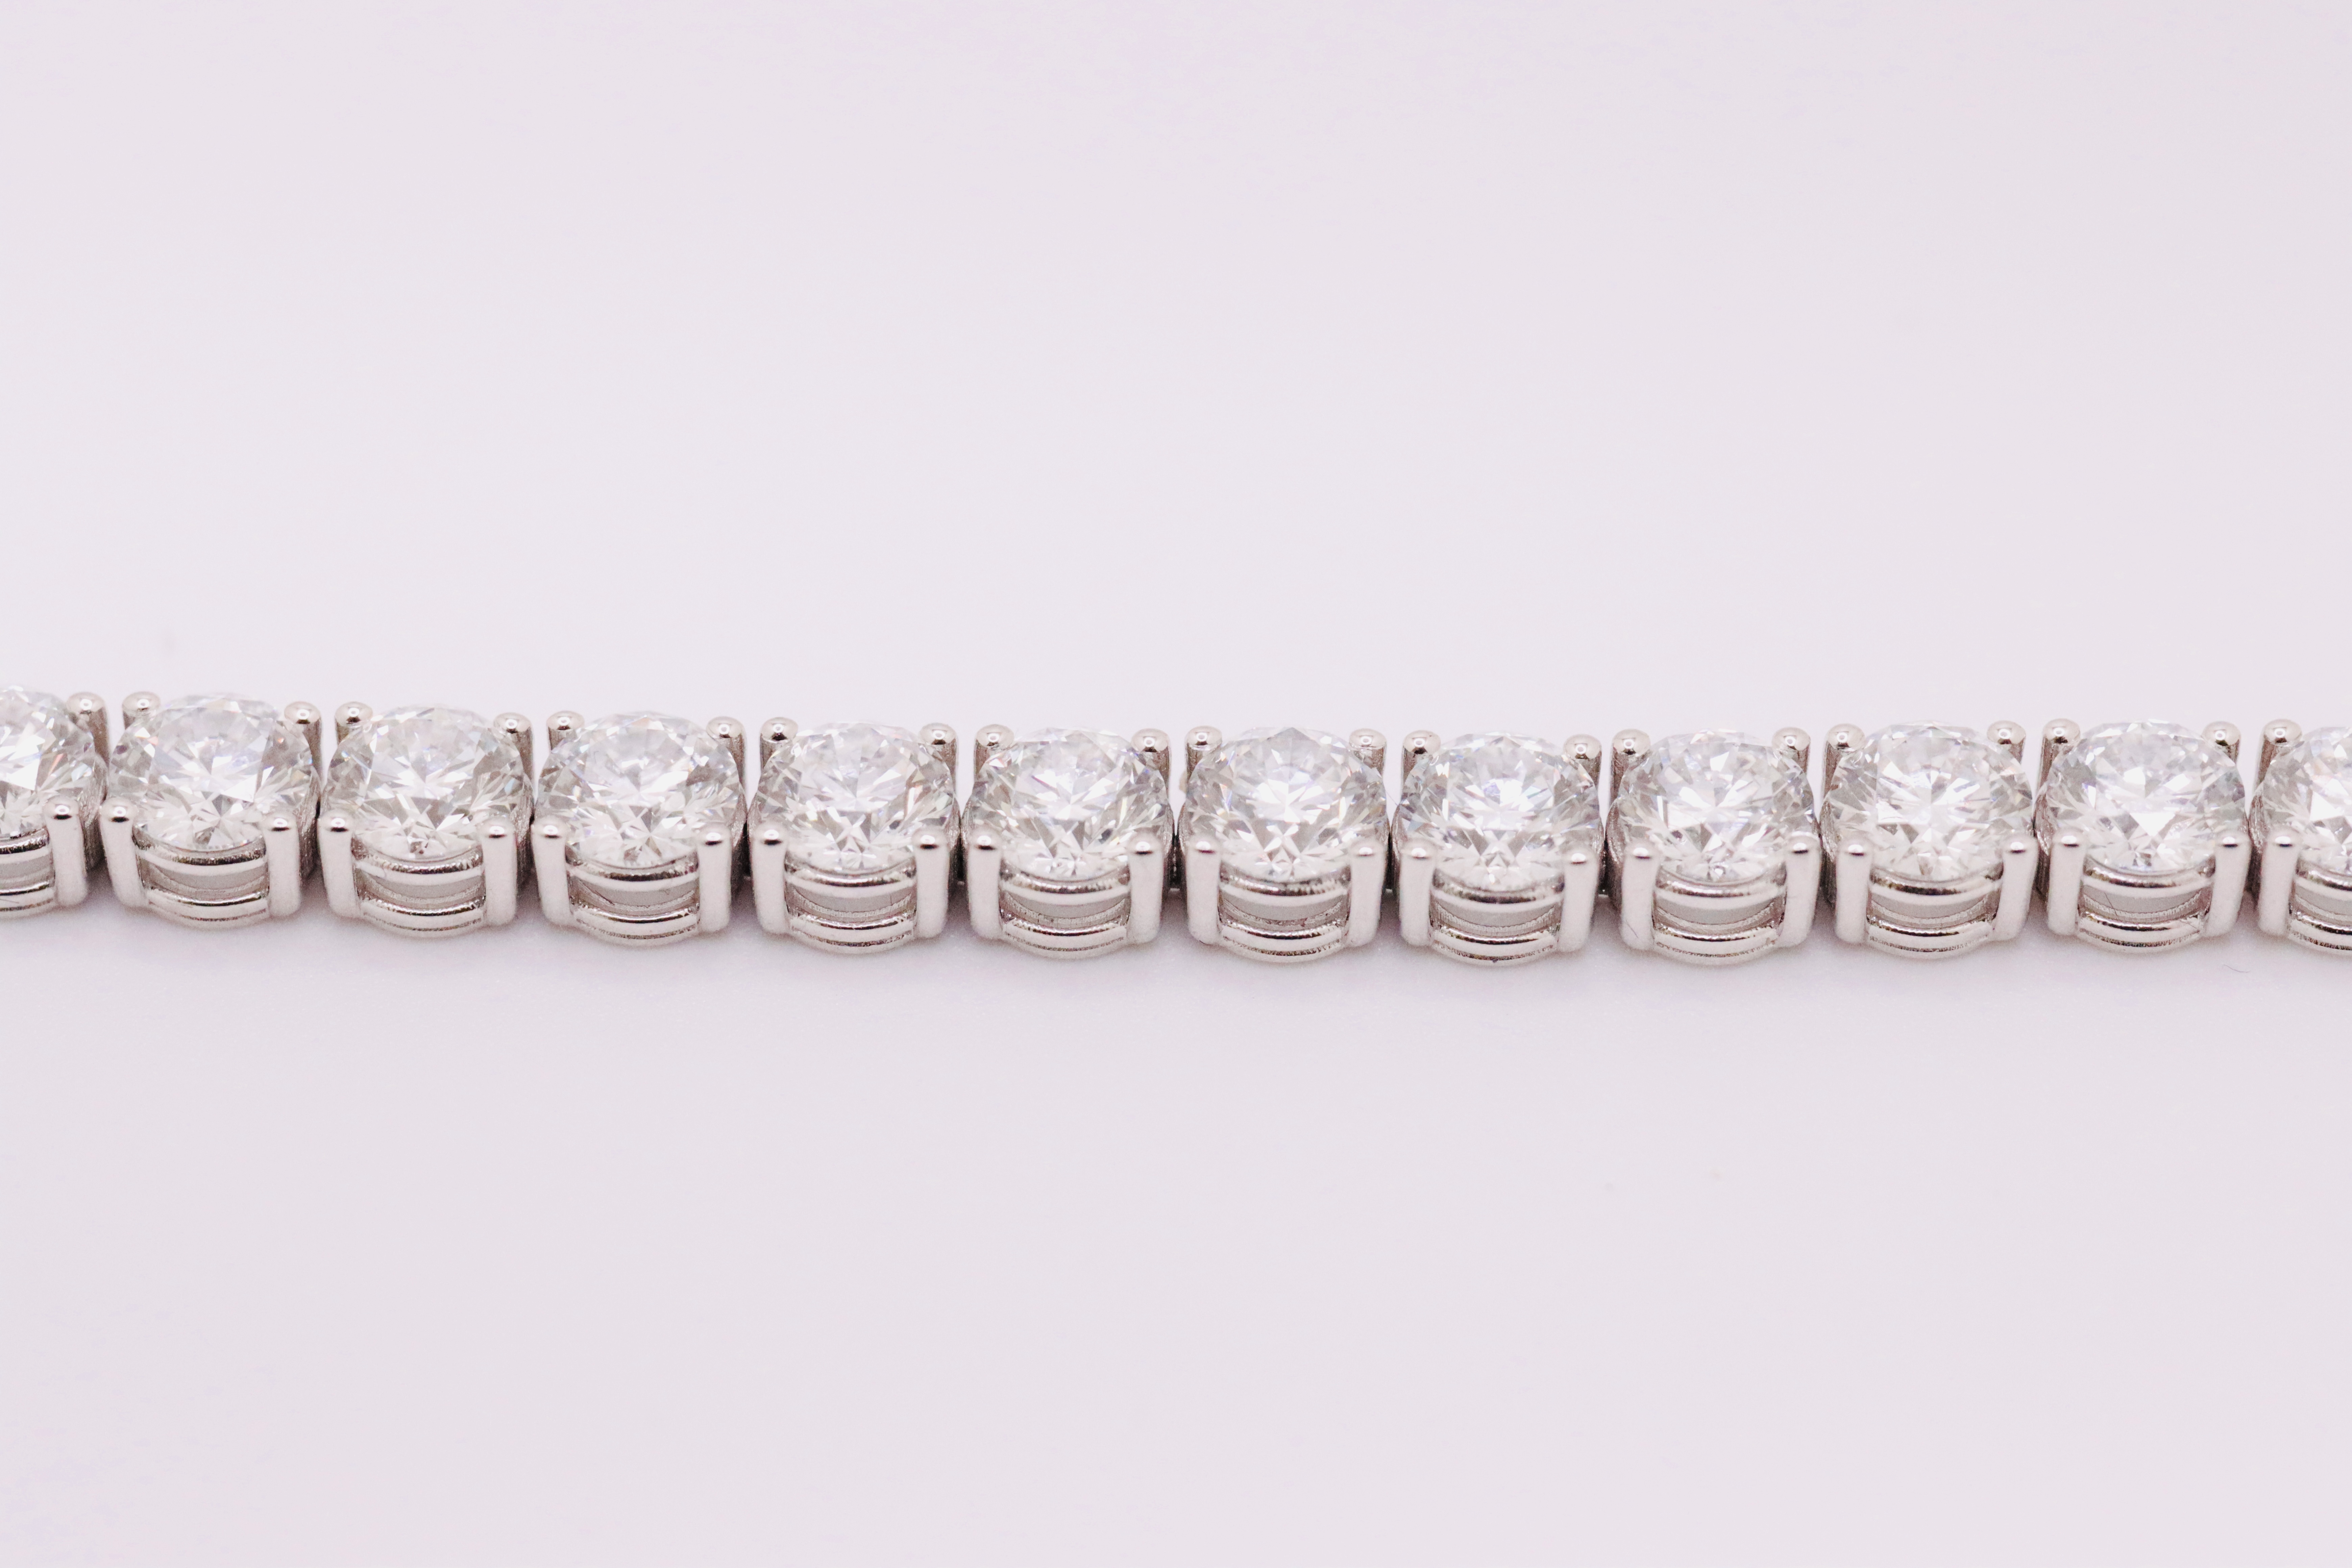 Round Brilliant Cut 21 Carat Diamond Tennis Bracelet D Colour VVS Clarity - 18Kt White Gold - IGI - Image 7 of 9